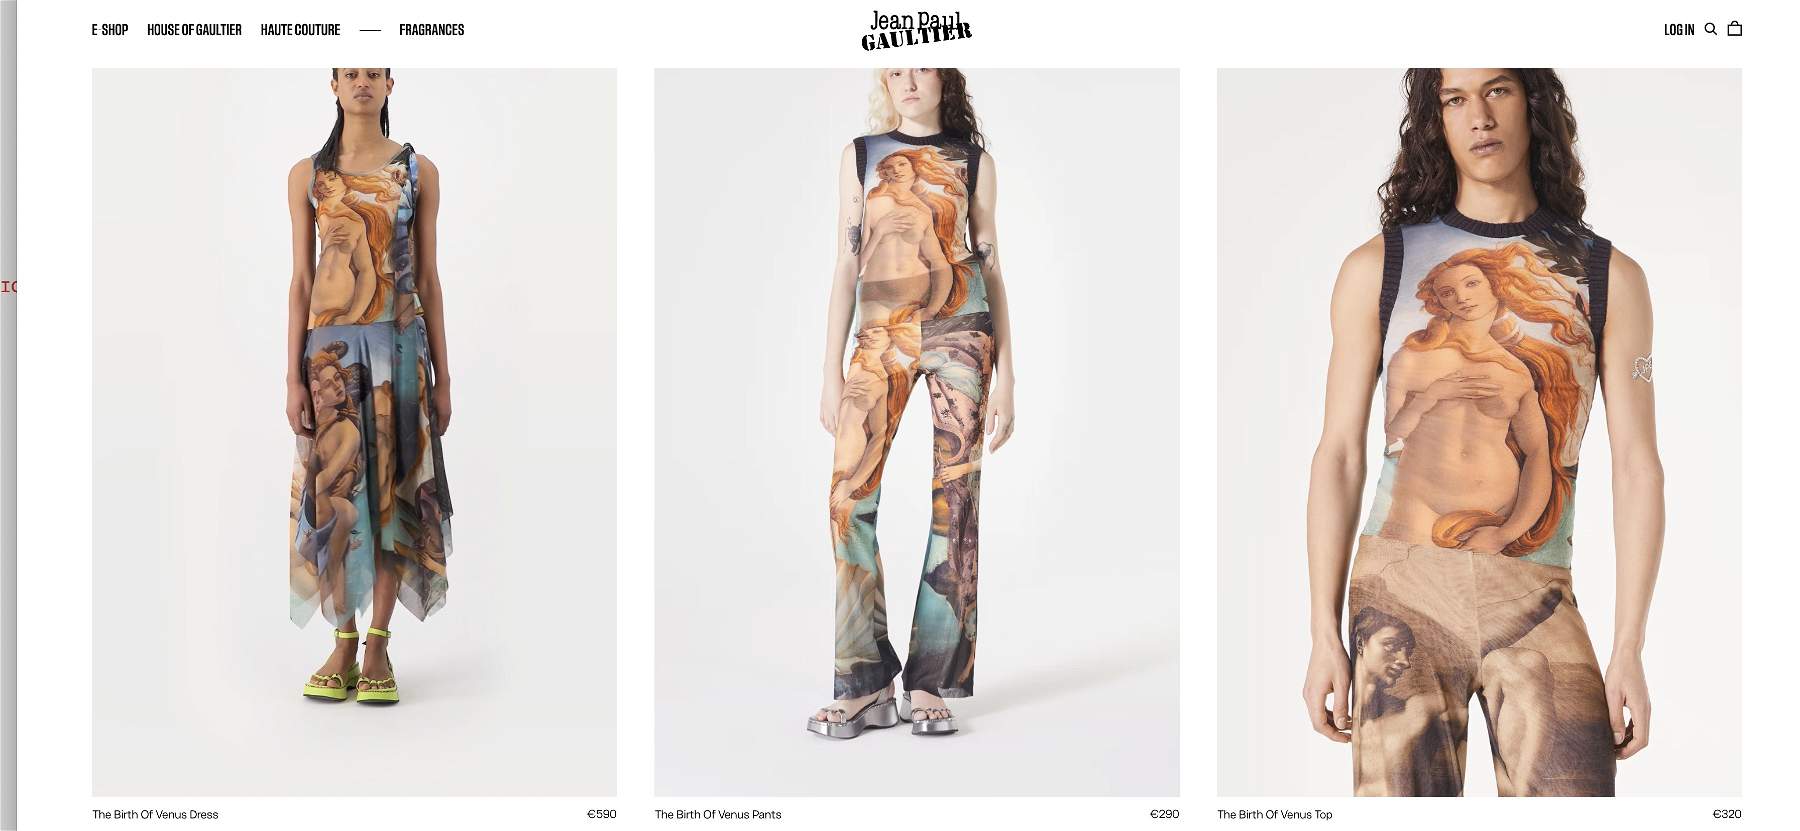 L'Uffizi poursuit Jean Paul Gaultier pour l'image de Vénus sur ses vêtements